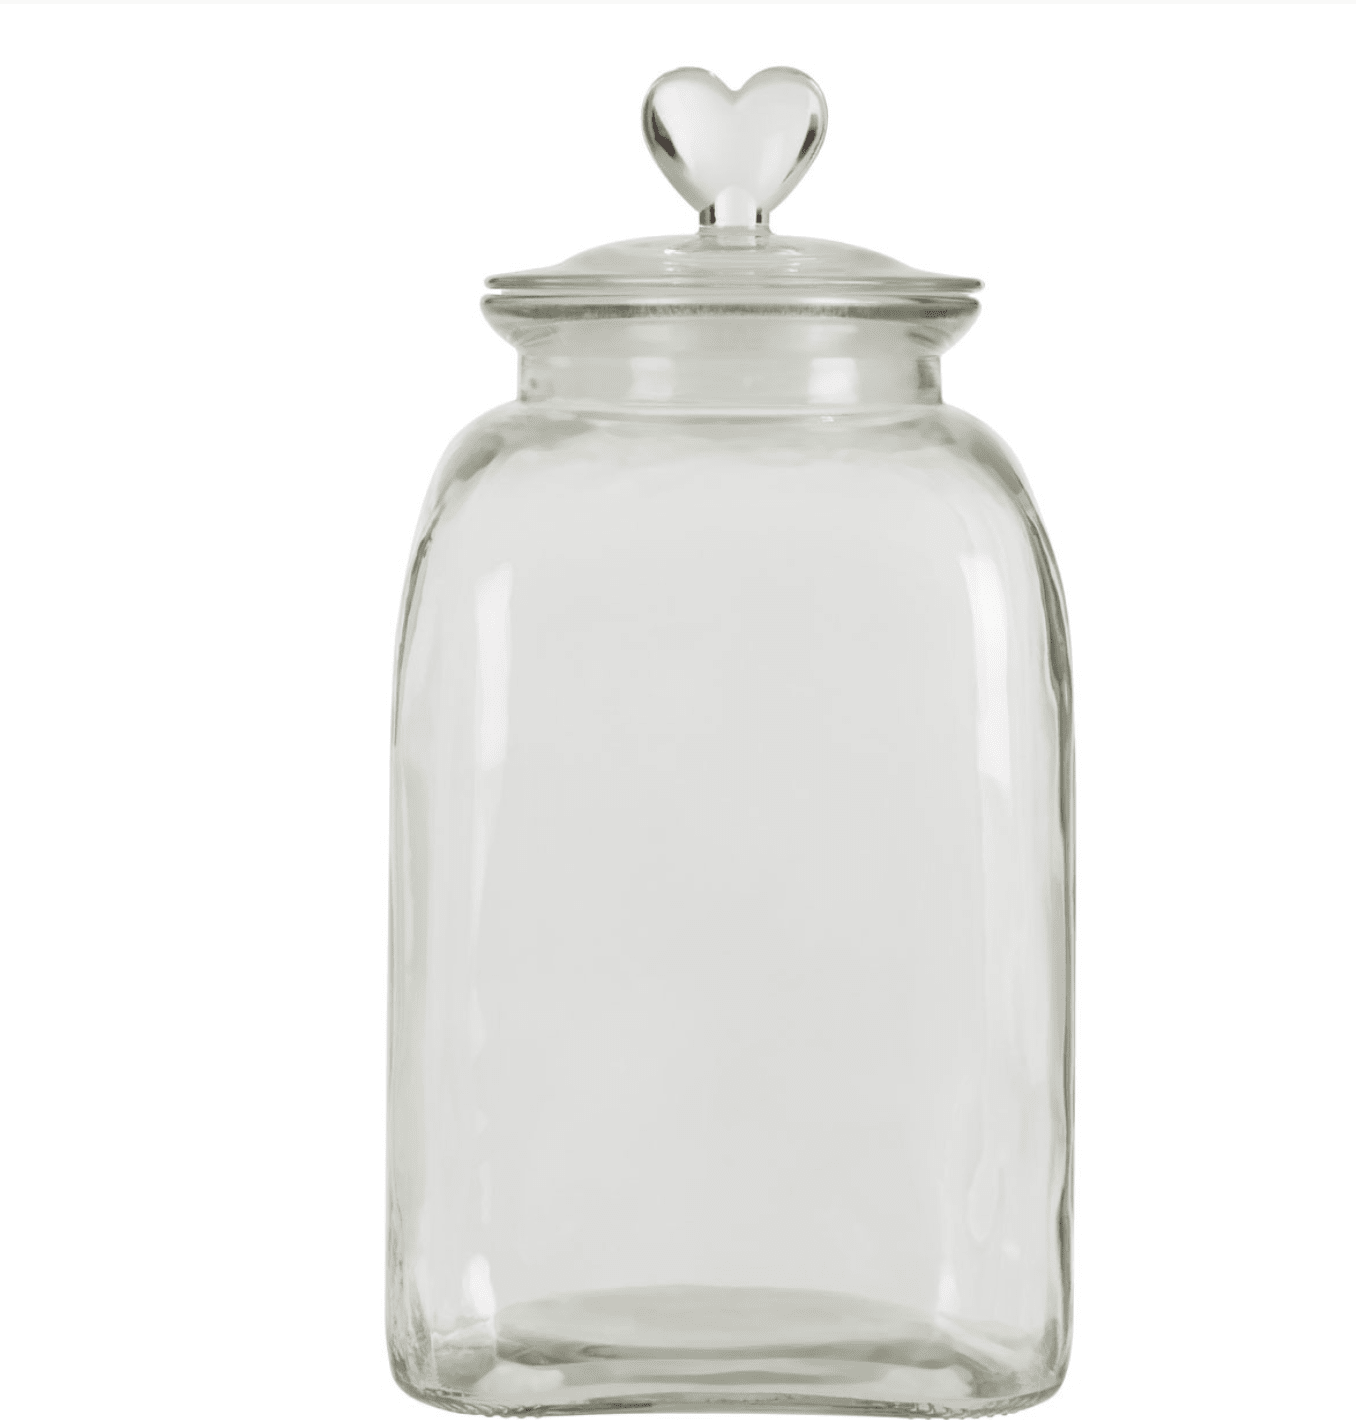 Loves Me Glass Storage Jar - Large